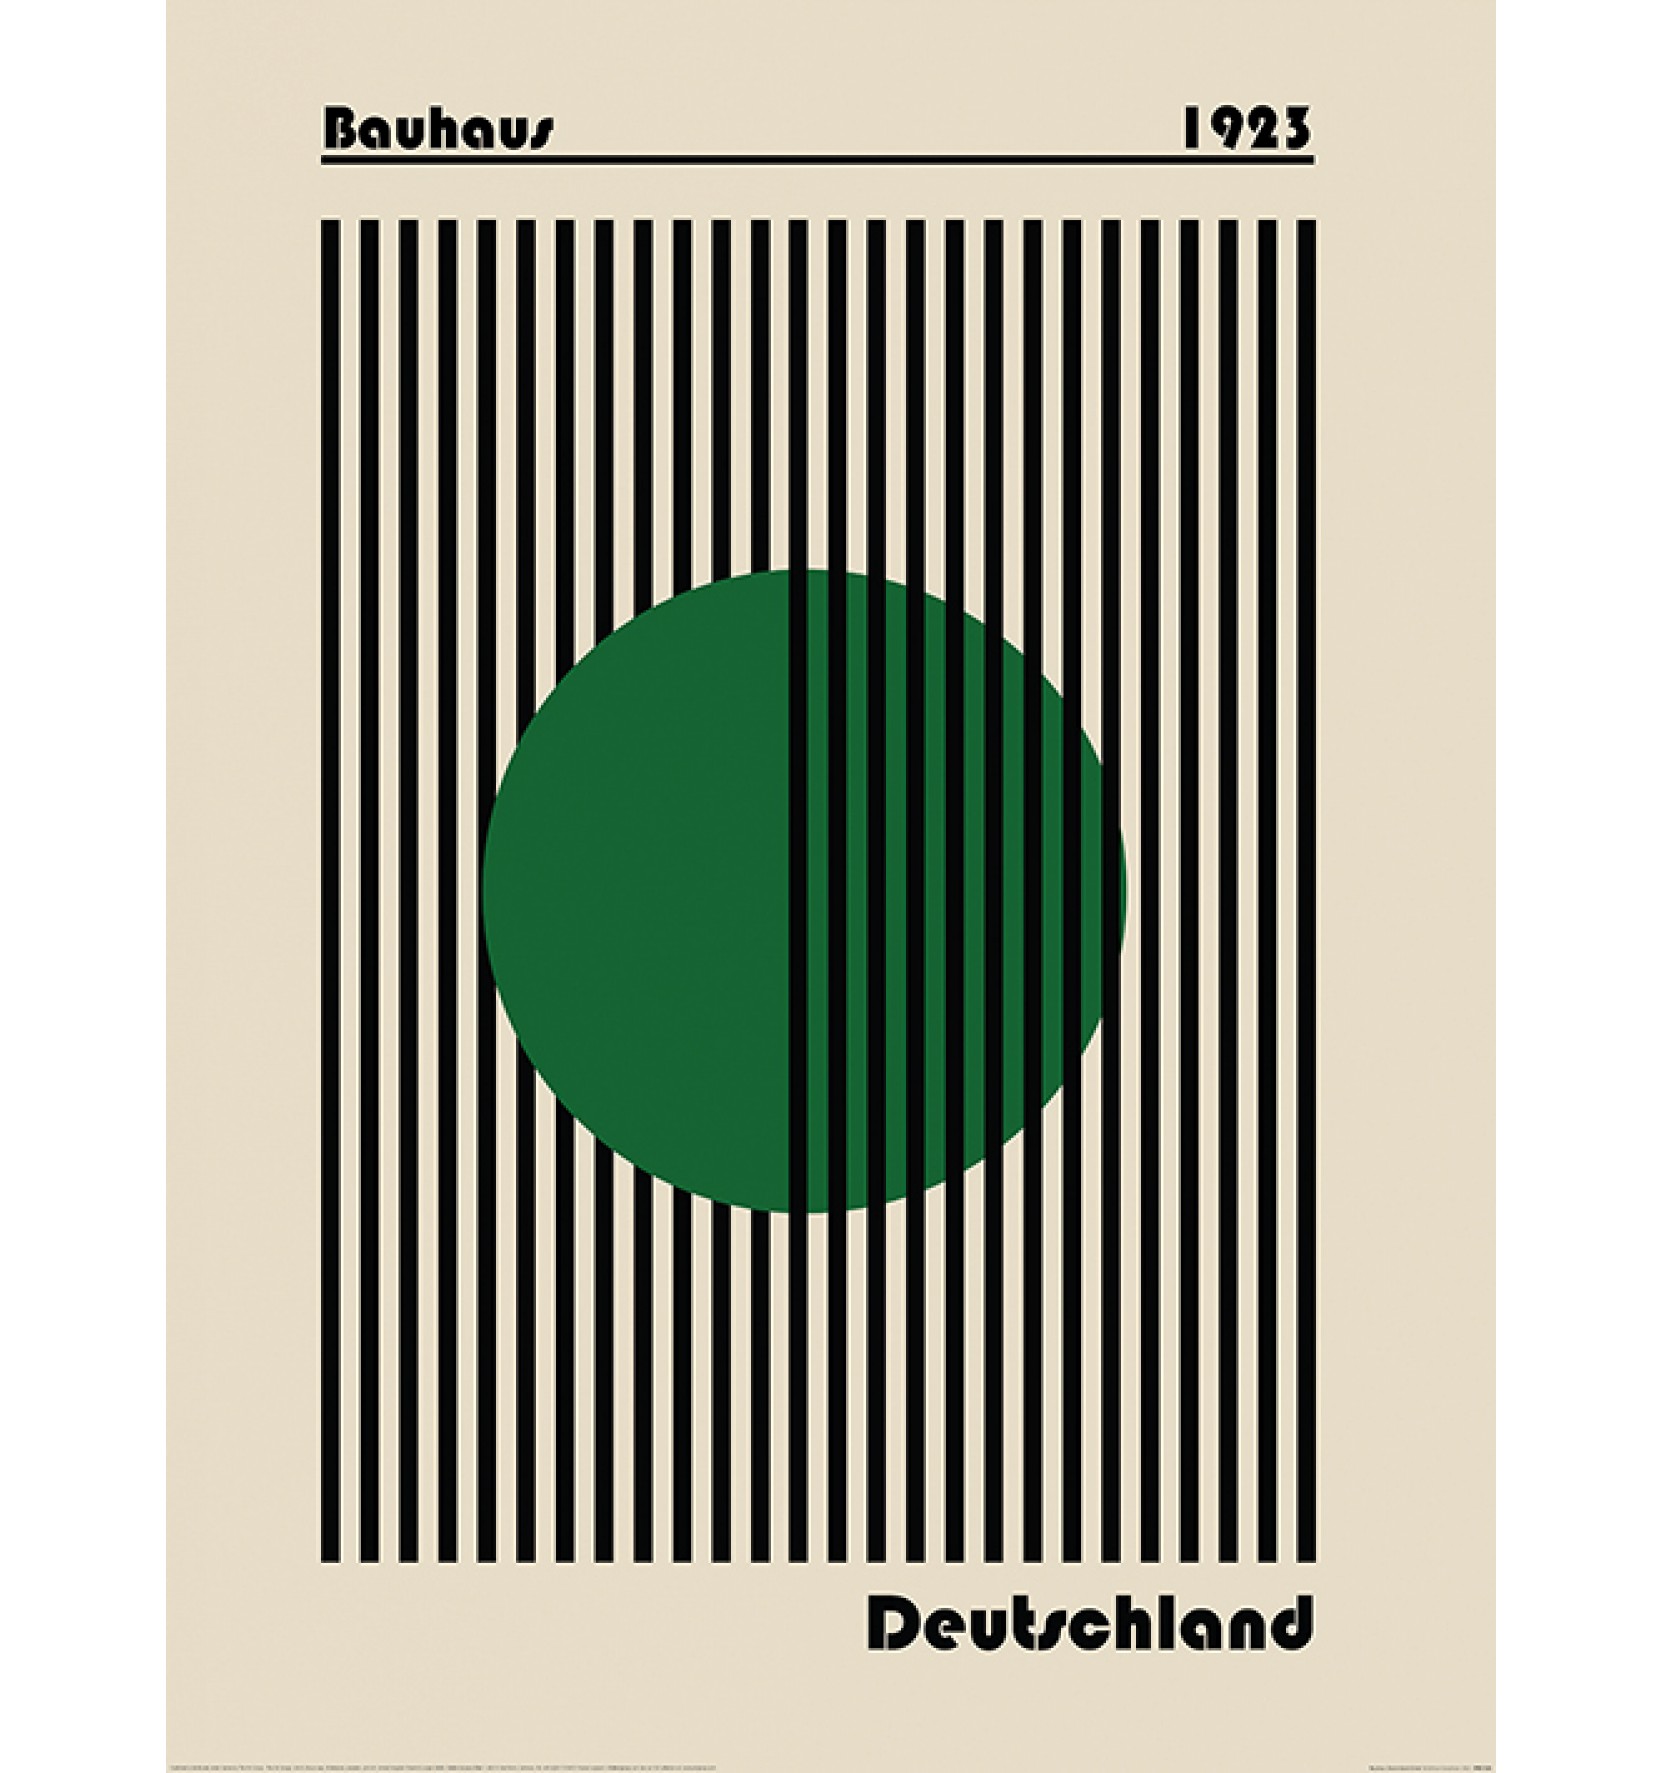 Bauhaus Deutschland Green by William Gustafsson